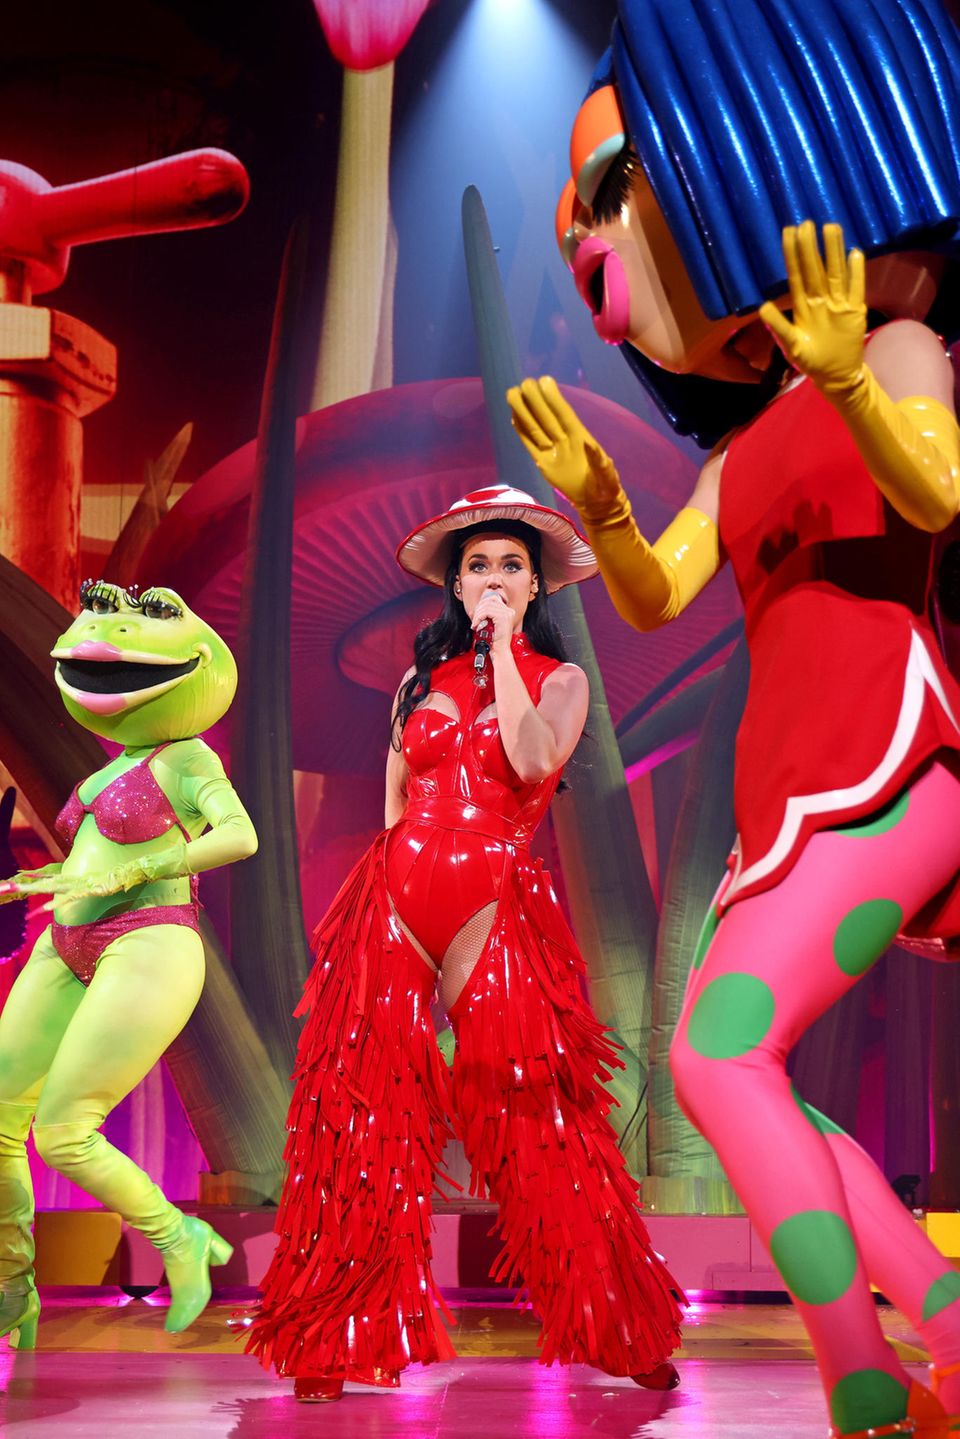 Skurril und trotzdem elegant performt Katy Perry bei ihrer "PLAY"-Show in Las Vegas im Resorts World Theatre. Das Konzert ist mit einem aufwendigen Bühnenbild ausgestattet. Neben Fliegenpilzen, riesigen Masken und Trinkdosen fallen aber vor allem die Looks der Sängerin auf. Der rote Lack-Body mit Cut-Outs allein ist schon ein besonderes Kleidungsstück, aber in Kombination mit den roten fransigen Lack-Chaps ist dieser Look wirklich ein Hingucker. Der Fliegenpilz-Hut rundet das Outfit ab und zeigt, wie abgestimmt die Sängerin mit ihrem Bühnenbild ist. Auch die anderen Looks harmonieren perfekt mit den Requisiten.